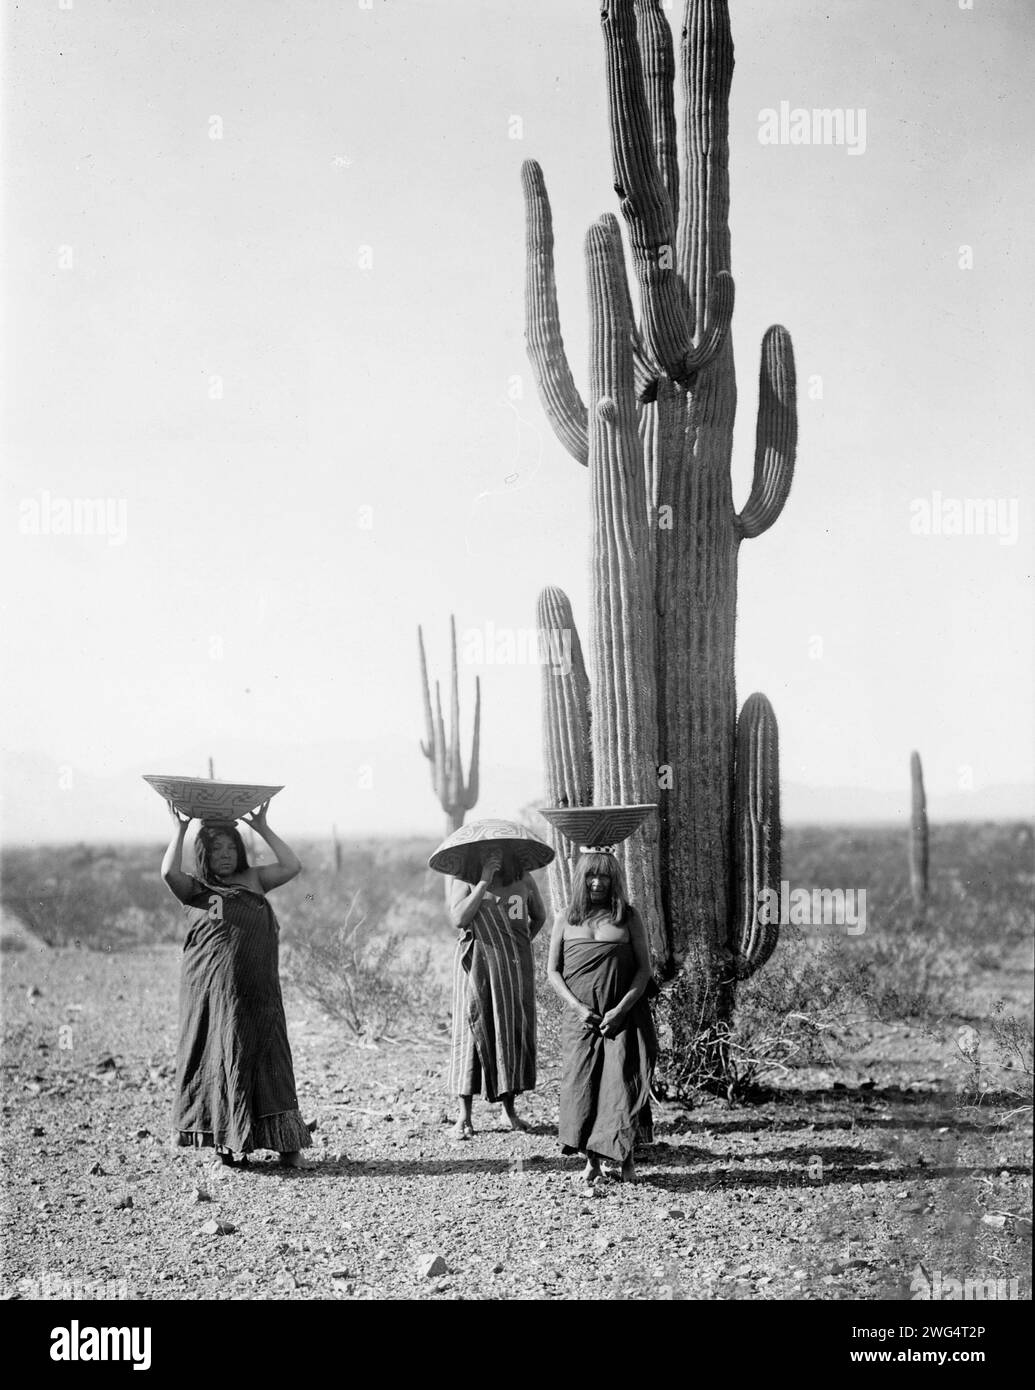 Femmes Maricopa récoltant des fruits de cactus Saguaro, 1907, c1907. Trois femmes Maricopa avec des paniers sur la tête, debout près des cactus Saguaro. Banque D'Images